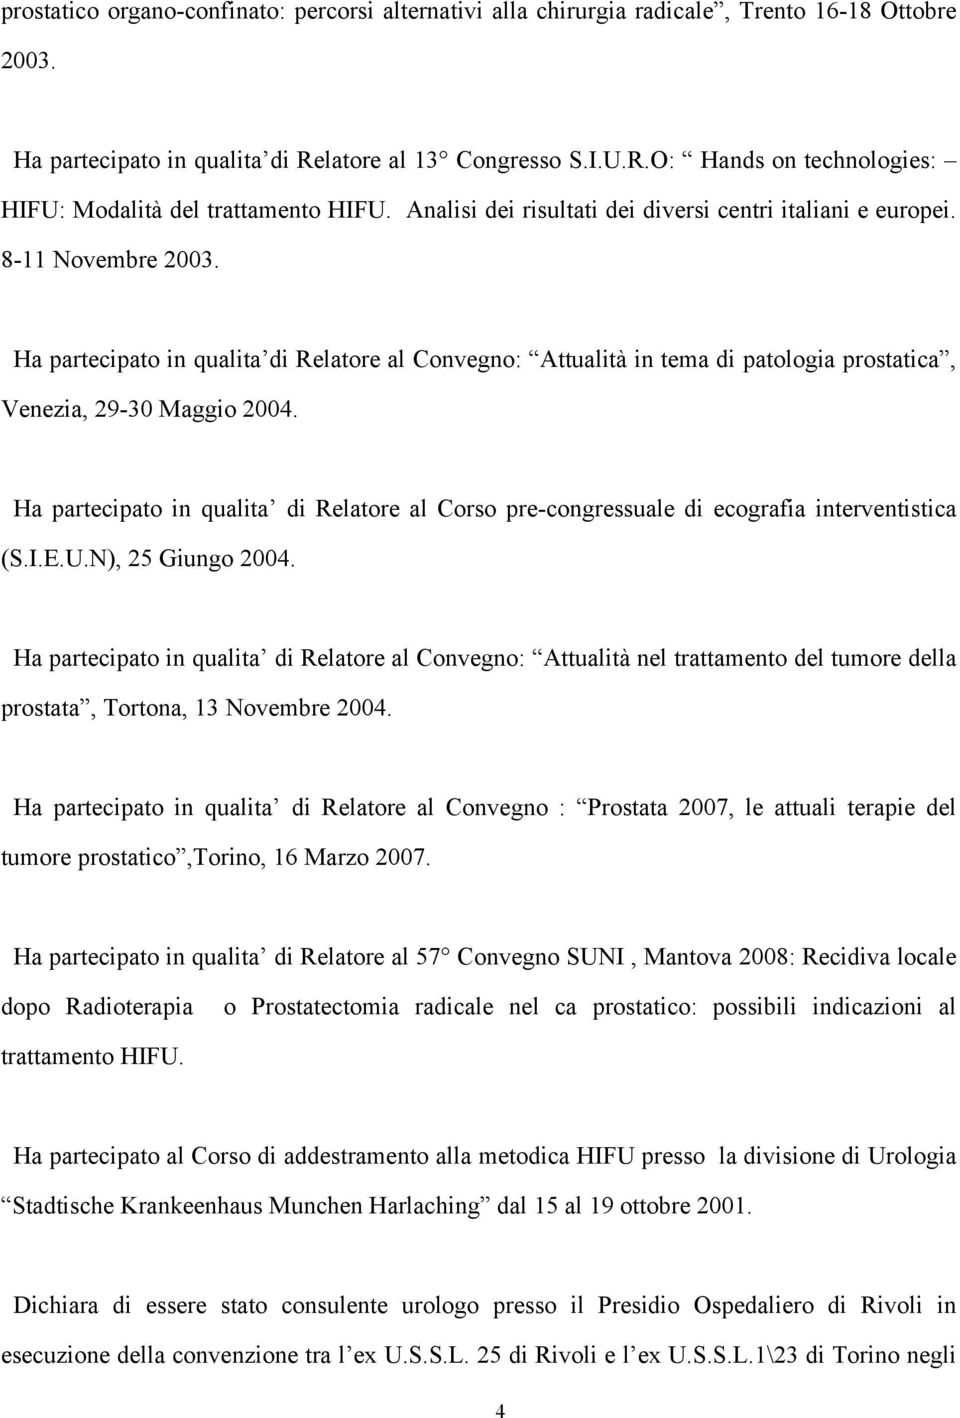 Ha partecipato in qualita di Relatore al Convegno: Attualità in tema di patologia prostatica, Venezia, 29-30 Maggio 2004.